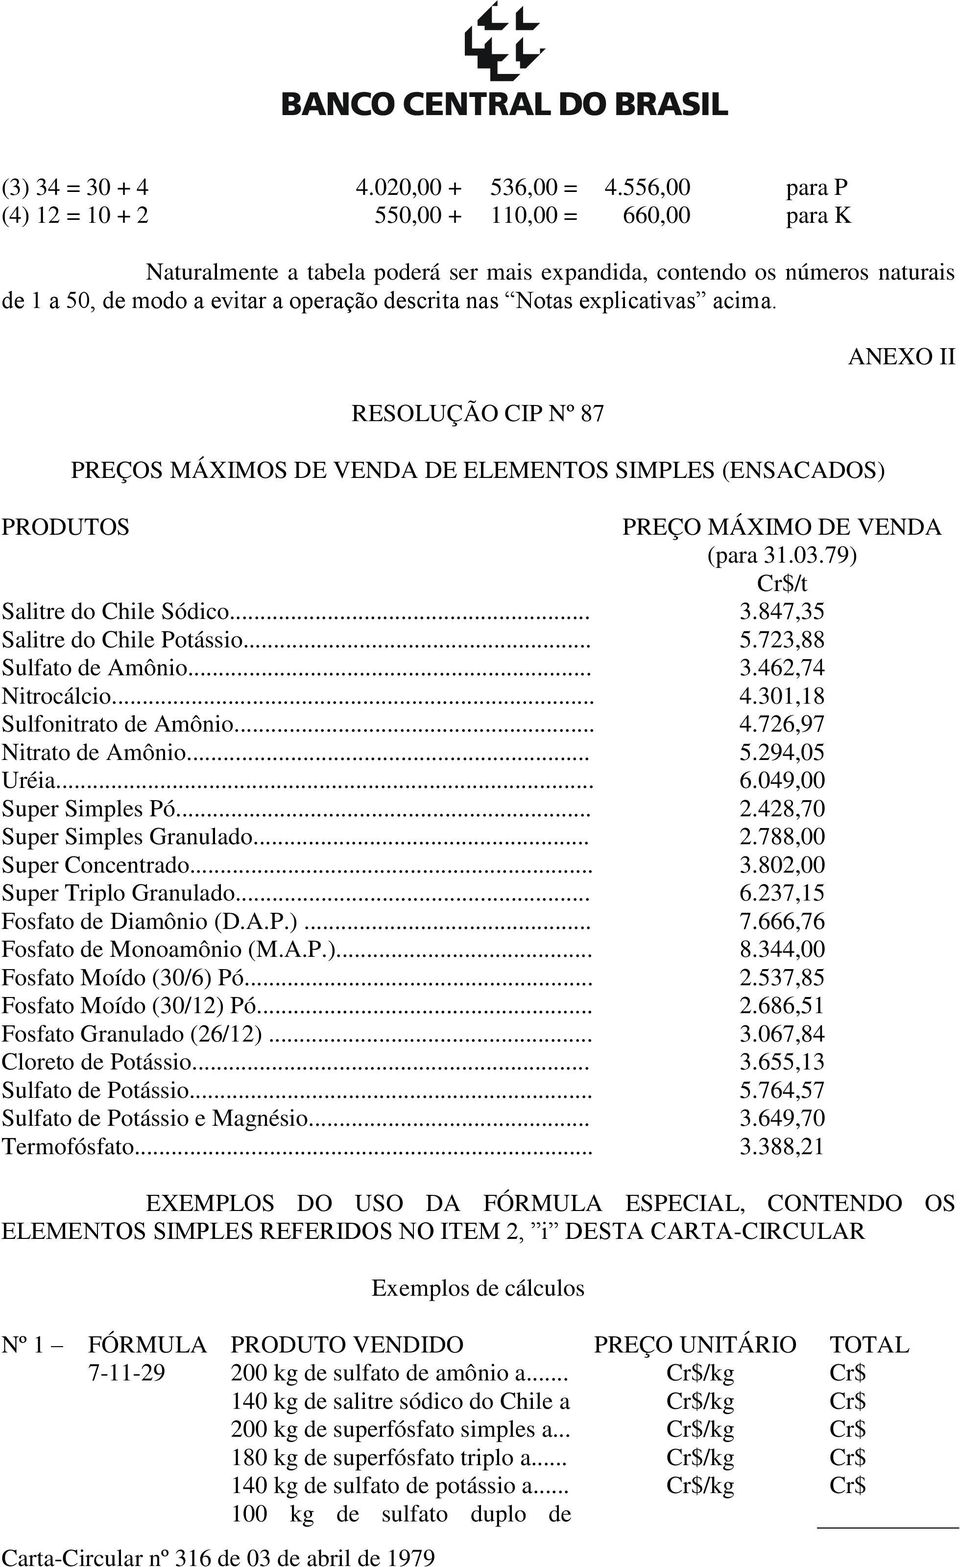 explicativas acima. RESOLUÇÃO CIP Nº 87 PREÇOS MÁXIMOS DE VENDA DE ELEMENTOS SIMPLES (ENSACADOS) ANEXO II PRODUTOS PREÇO MÁXIMO DE VENDA (para 31.03.79) Cr$/t Salitre do Chile Sódico... 3.847,35 Salitre do Chile Potássio.